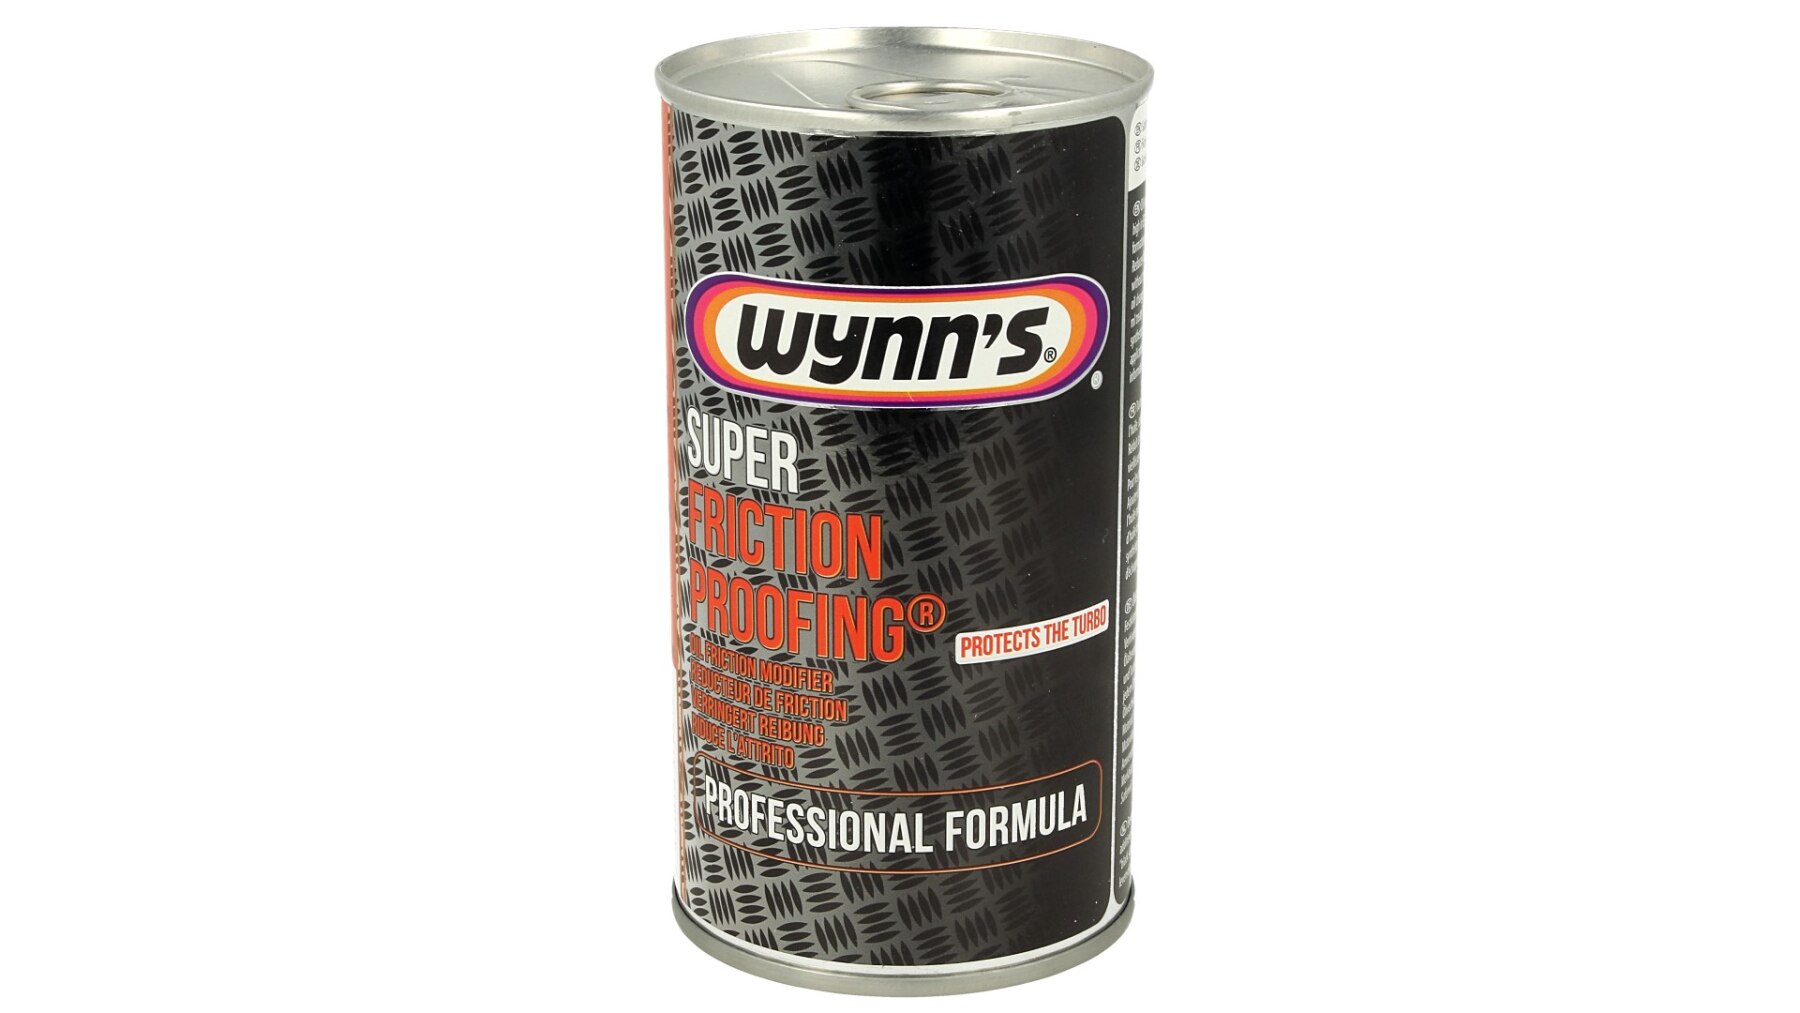 Wynn der W47041 Wynns Super Reibung Proofing reduziert Reibung schützen turbolader 325ml